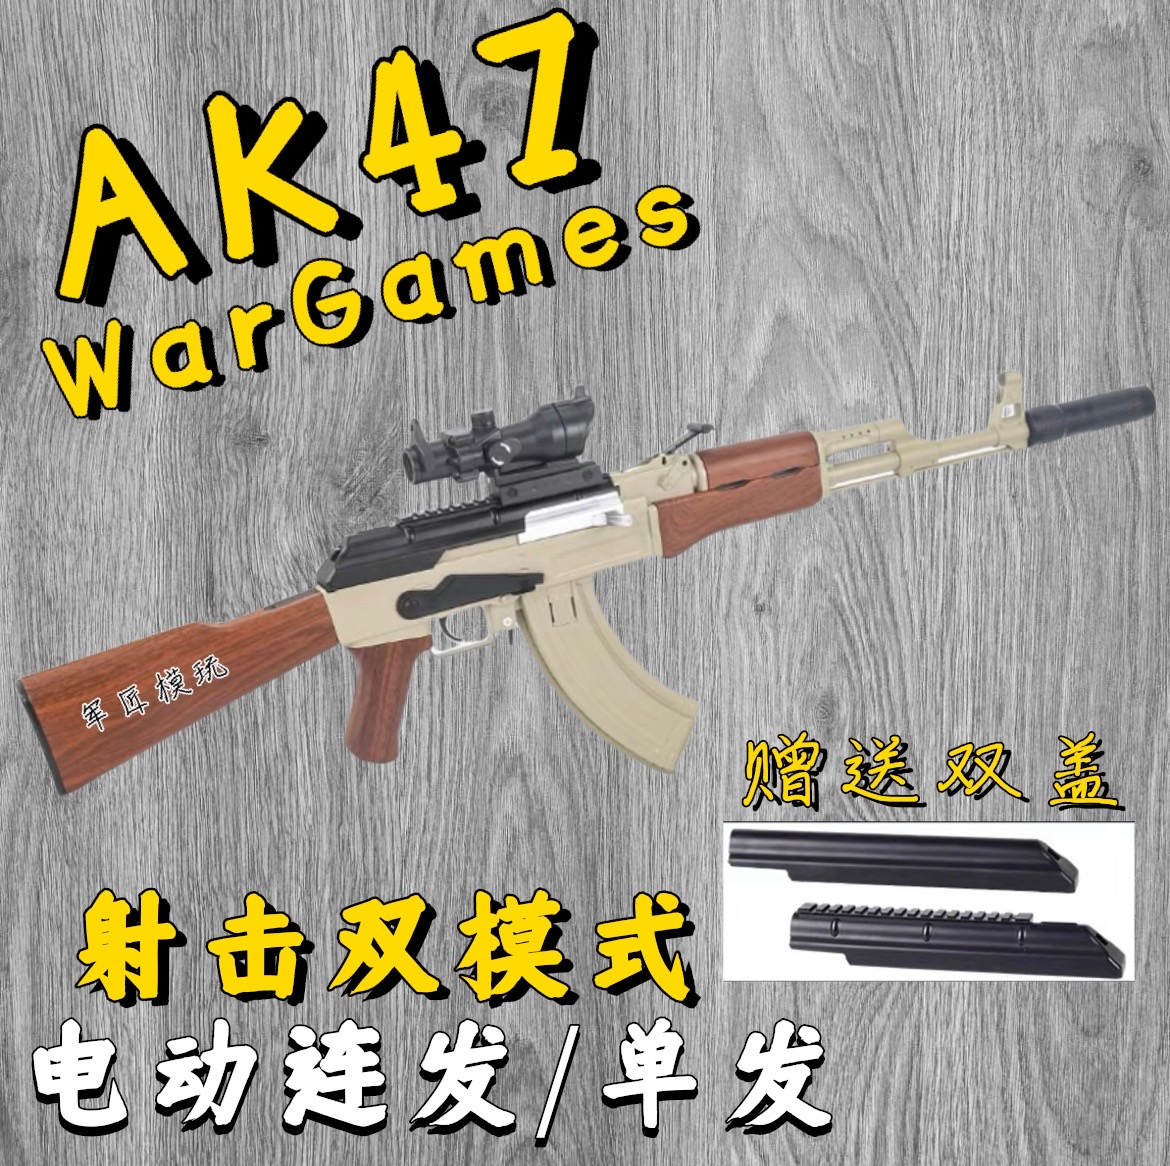 AK47儿童玩具仿真可折叠水晶电动连发软弹男孩阿卡47突击步枪模型